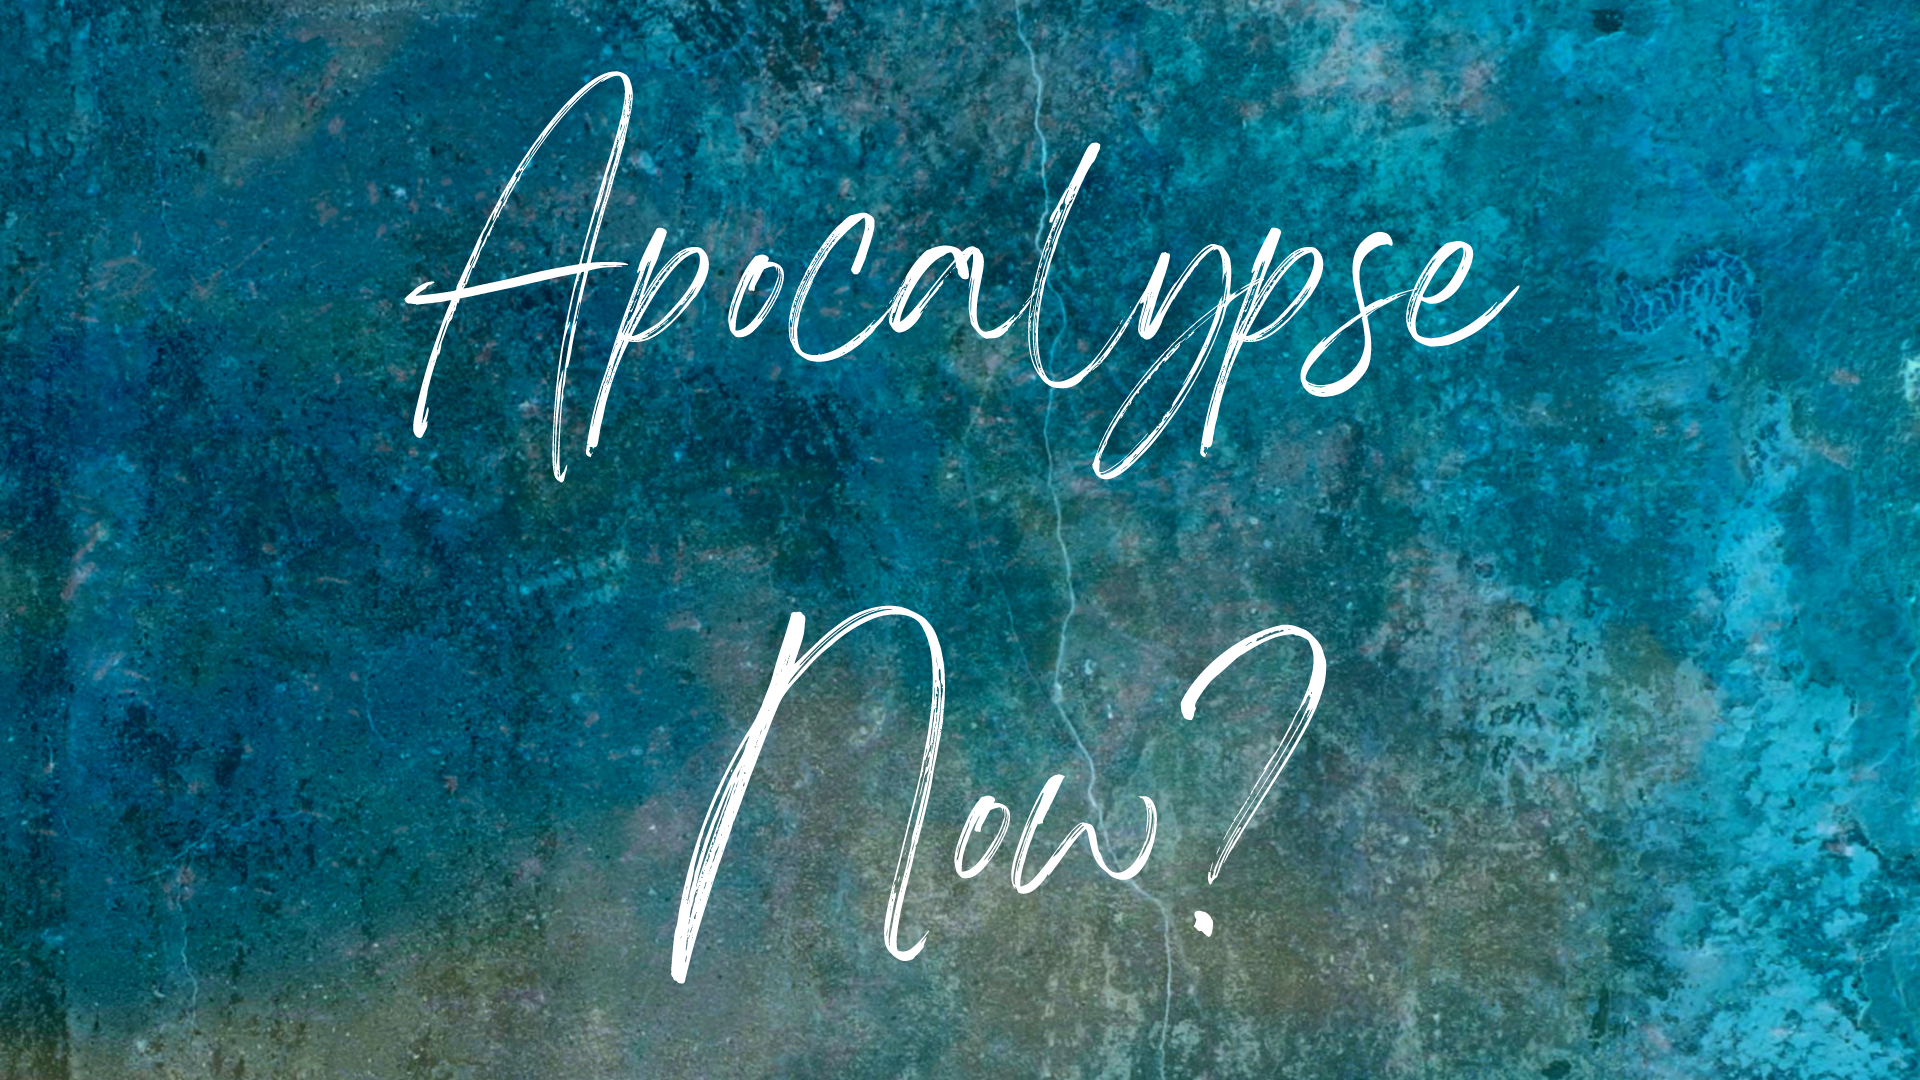 Apocalypse Now?